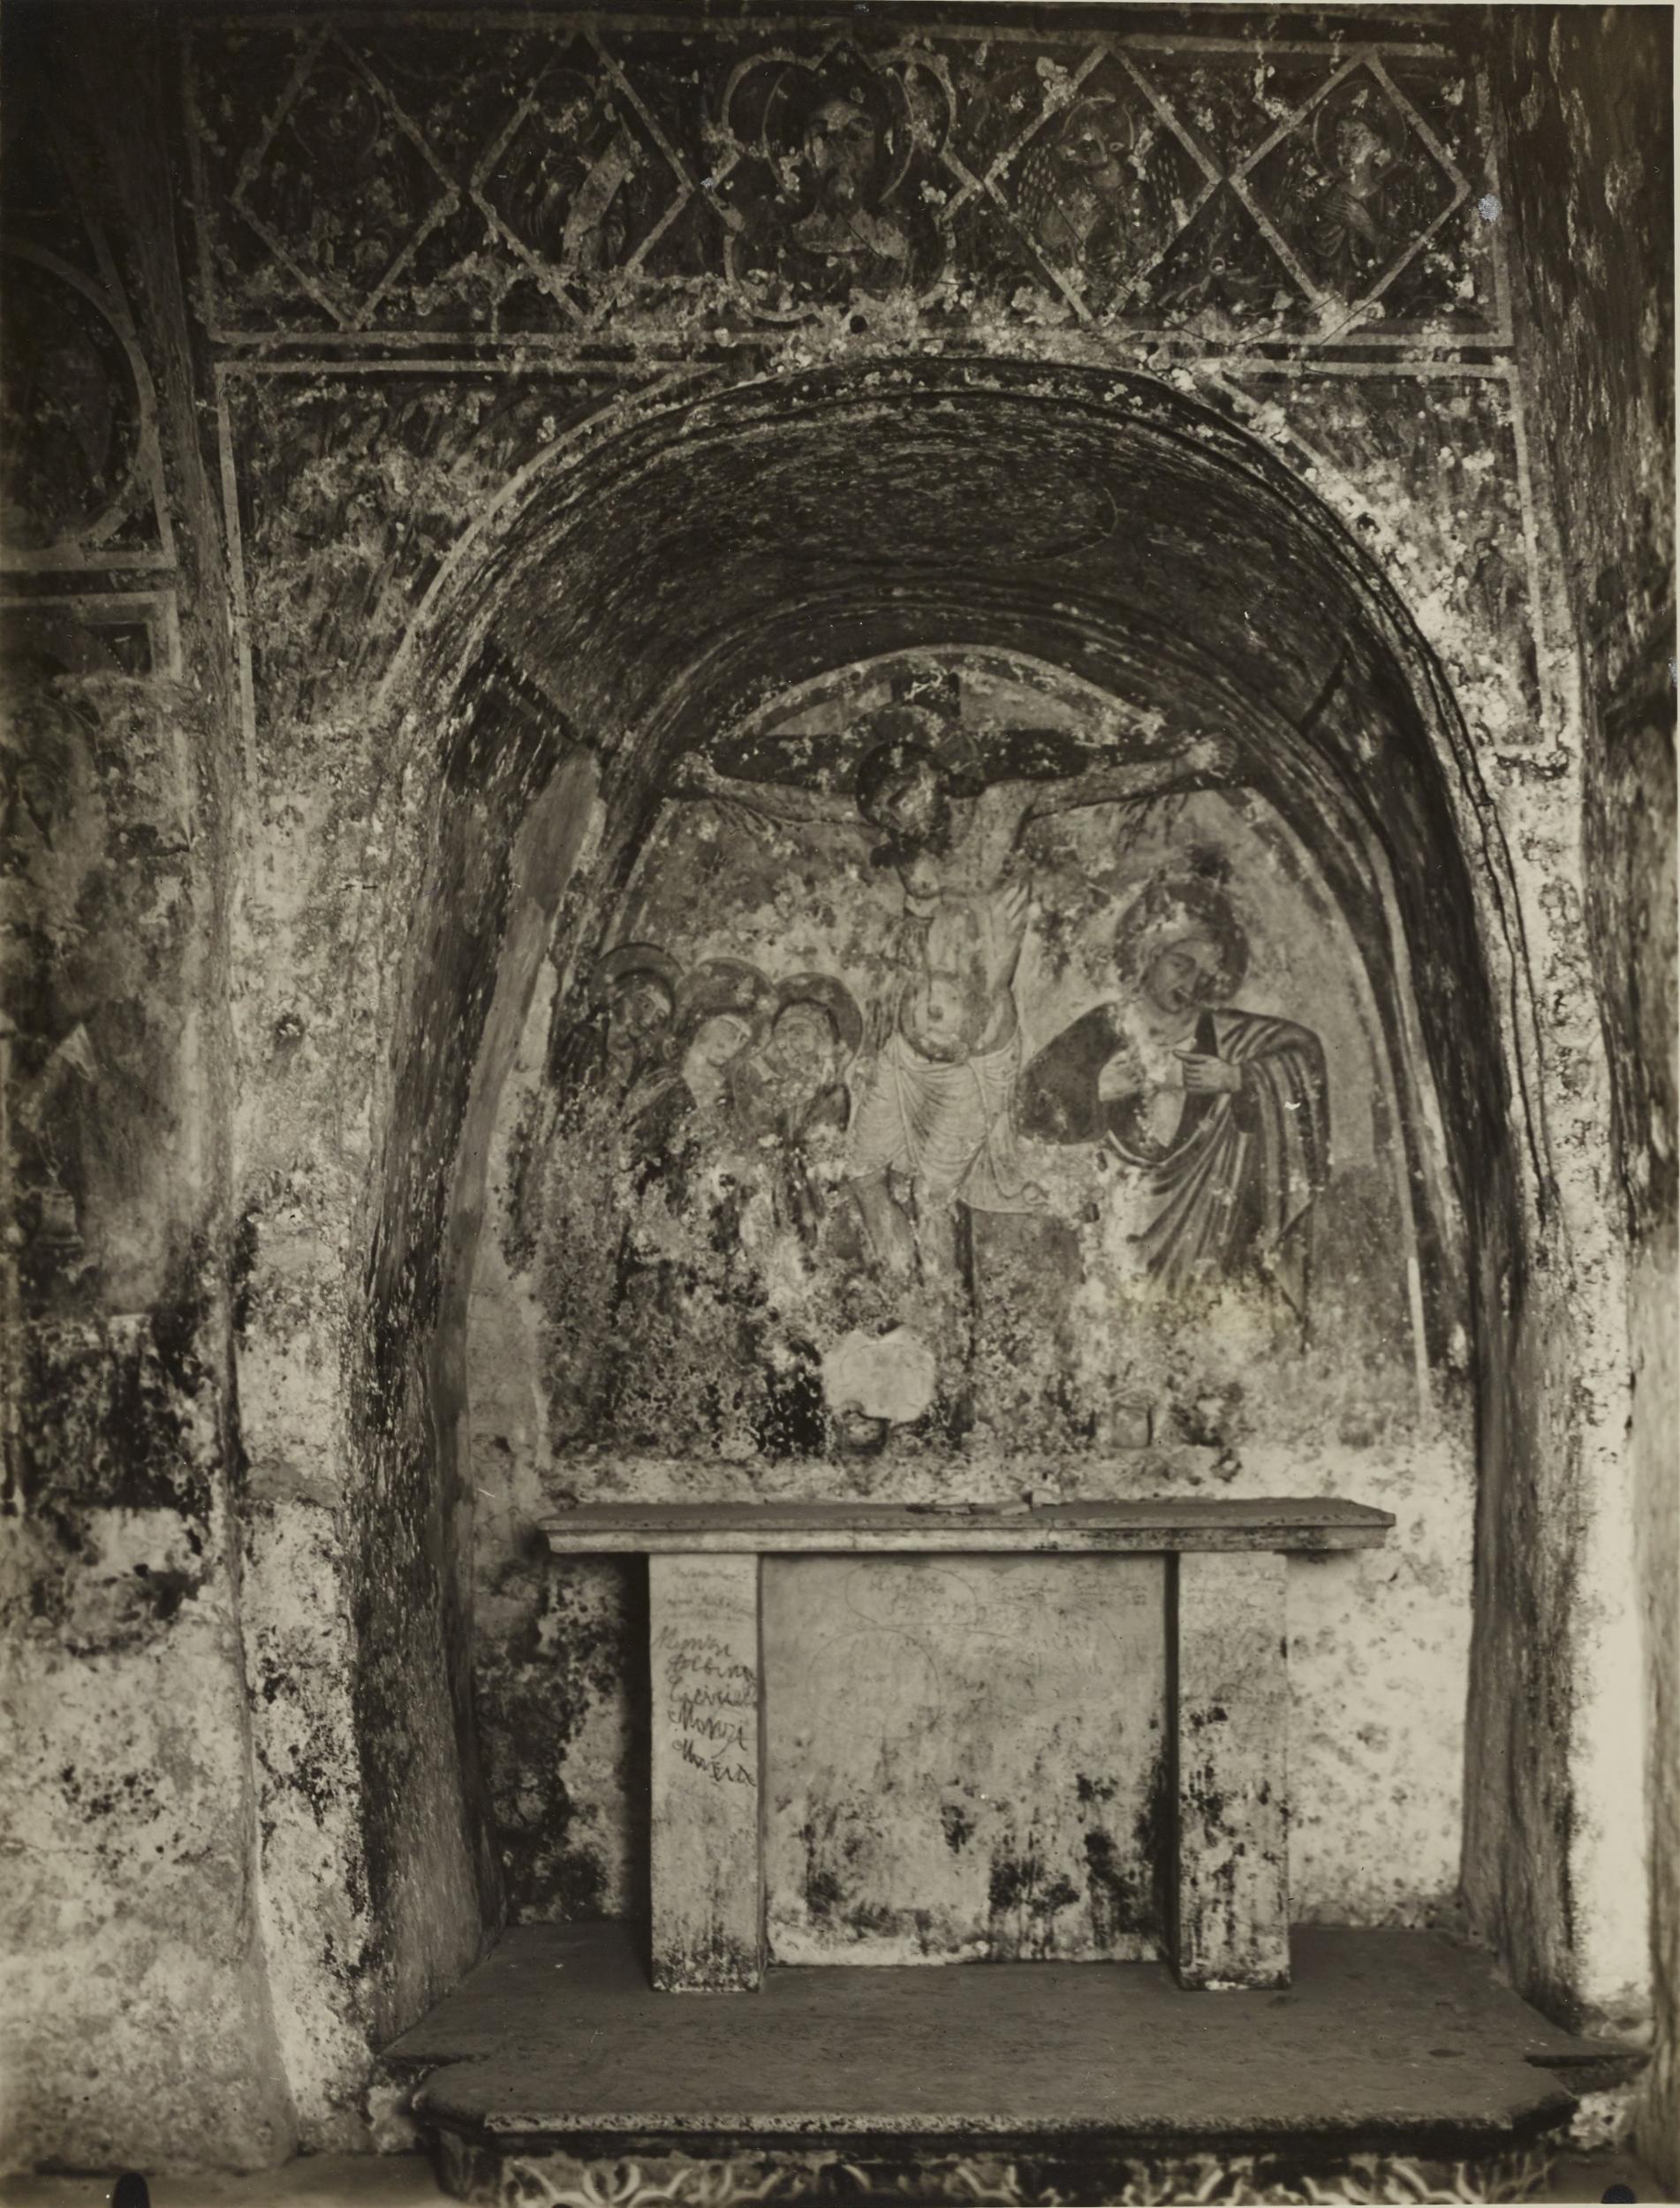 Fotografo non identificato, Andria - Chiesa di S. Croce, abside destra, crocifissione, 1926-1950, gelatina ai sali d'argento/carta, MPI131860